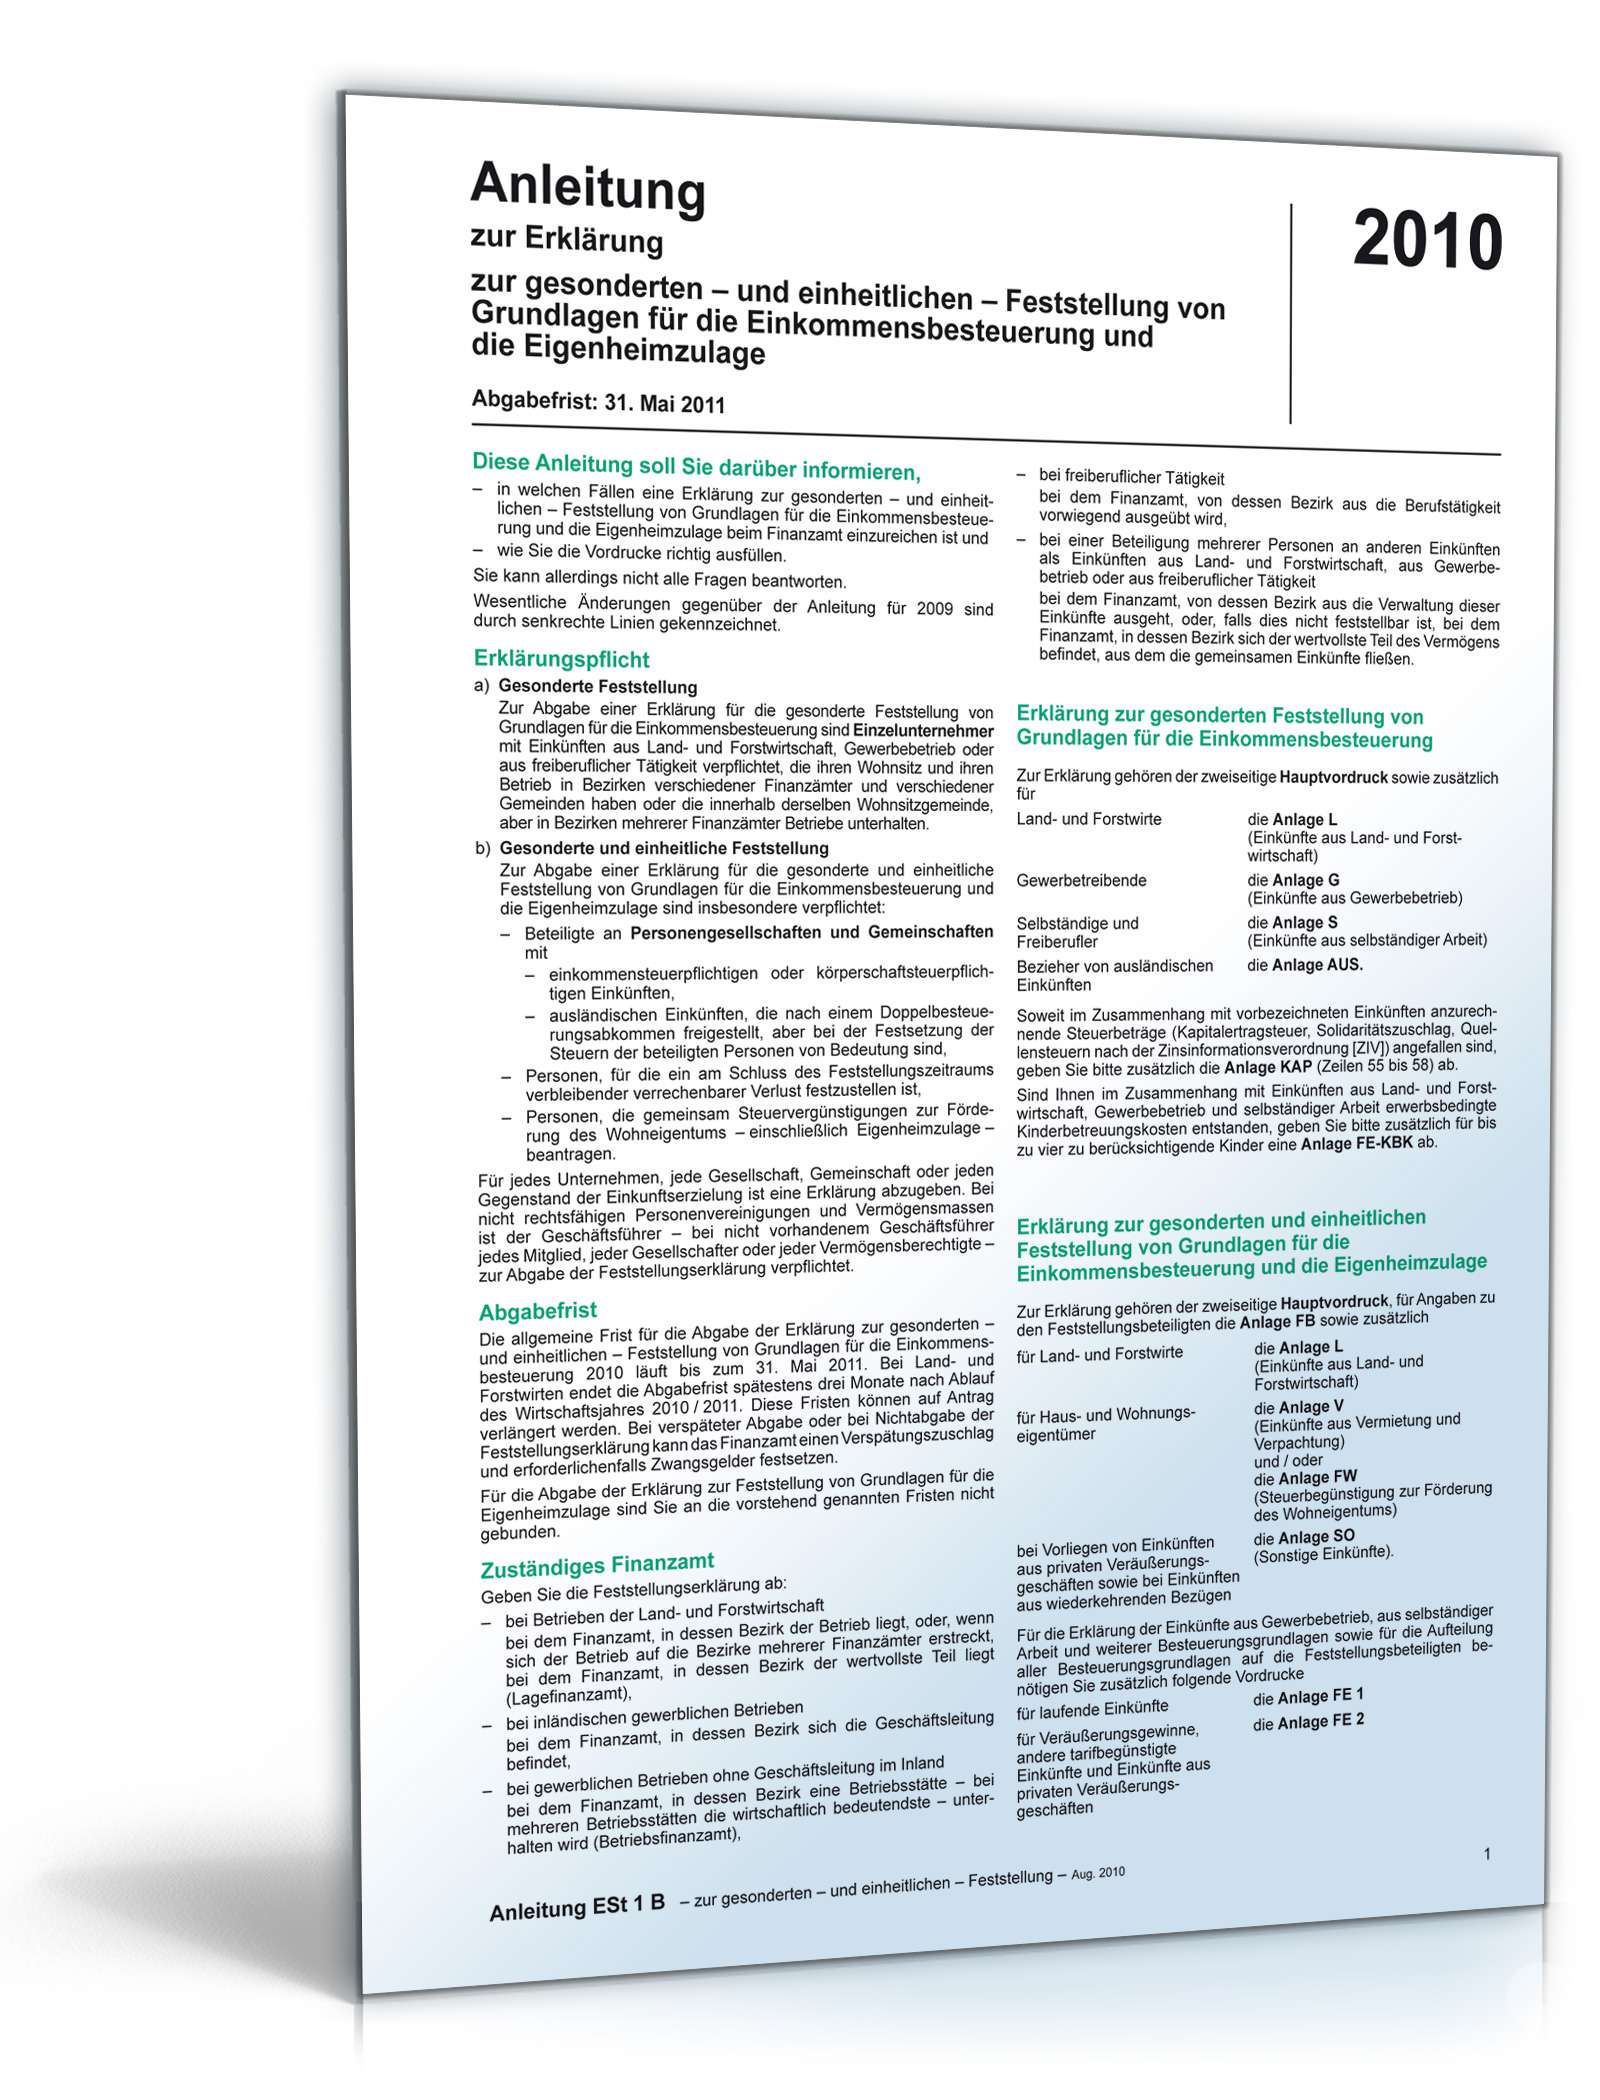 Hauptbild des Produkts: Anleitung Feststellung Einkommensbesteuerung/Eigenheimzulage 2010